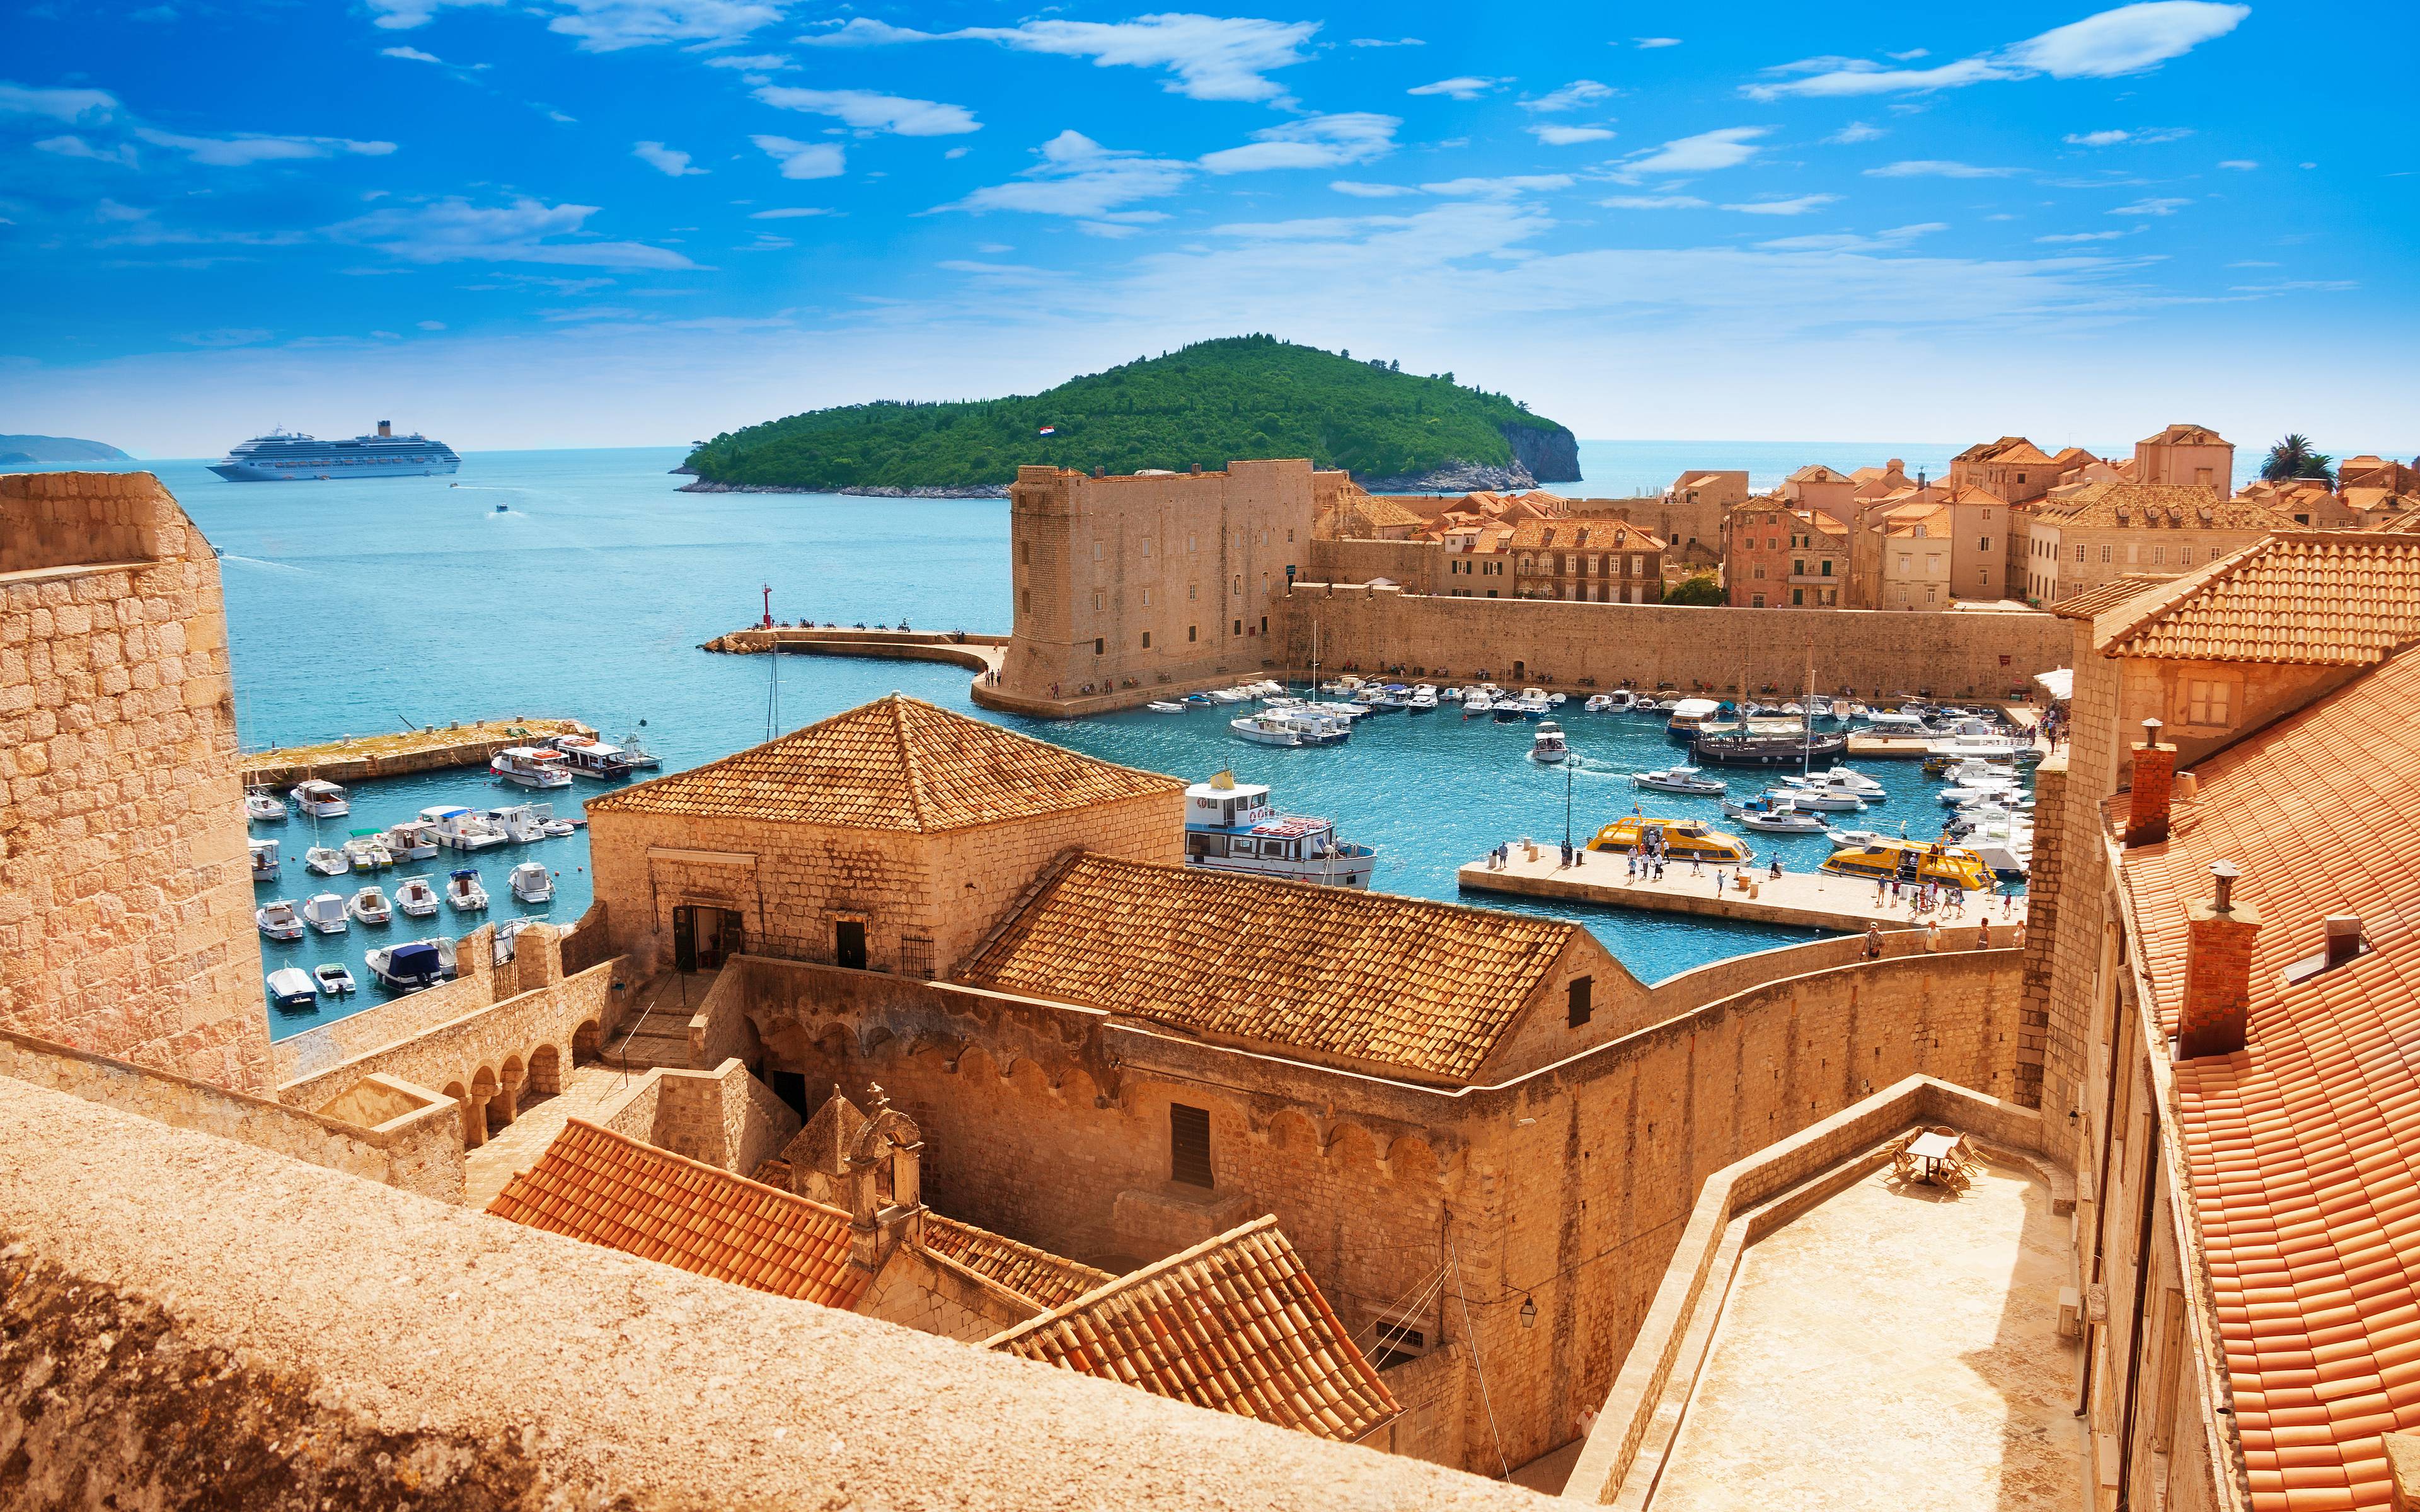 Despedida de las murallas medievales de Dubrovnik